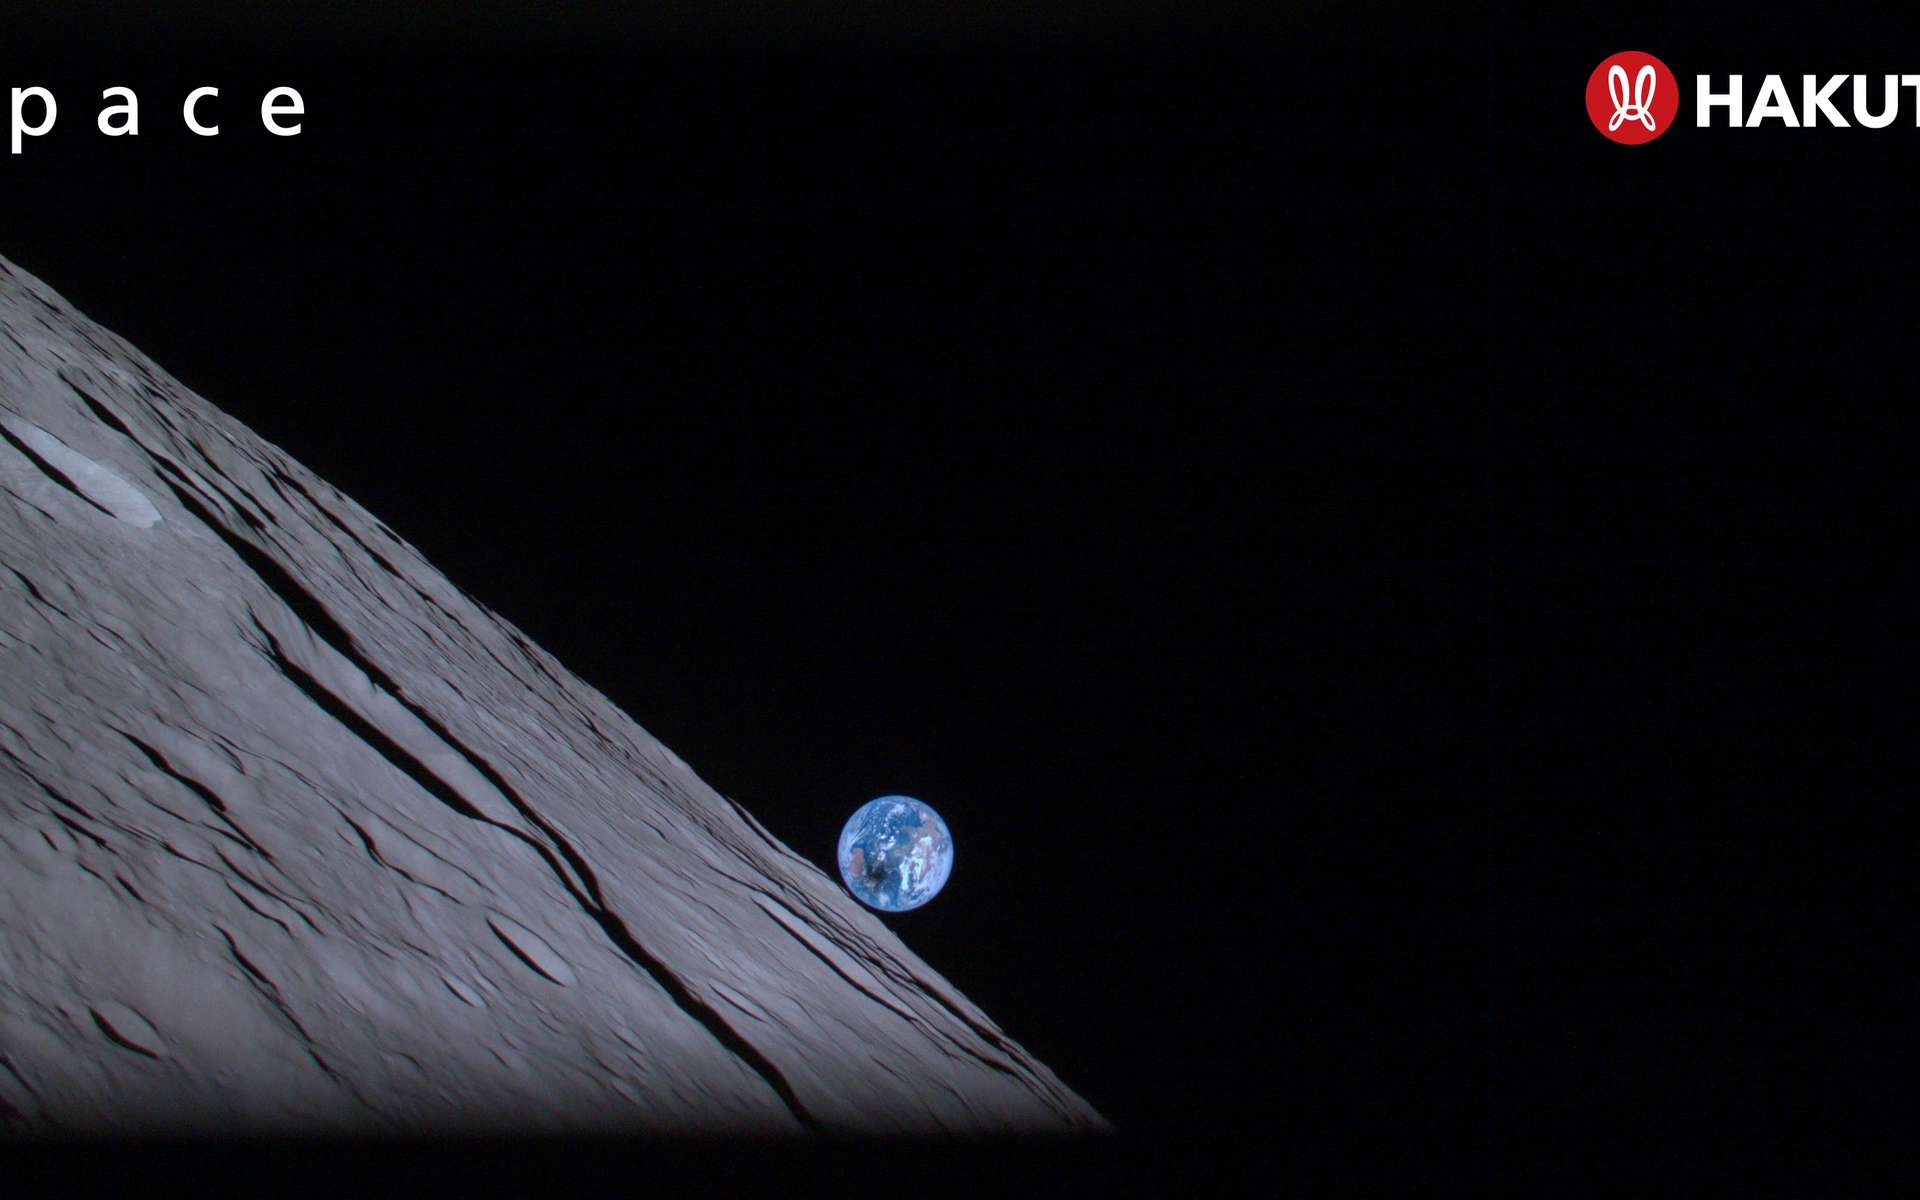 La Nasa a retrouvé la sonde qui s'est écrasée sur la Lune le 25 avril